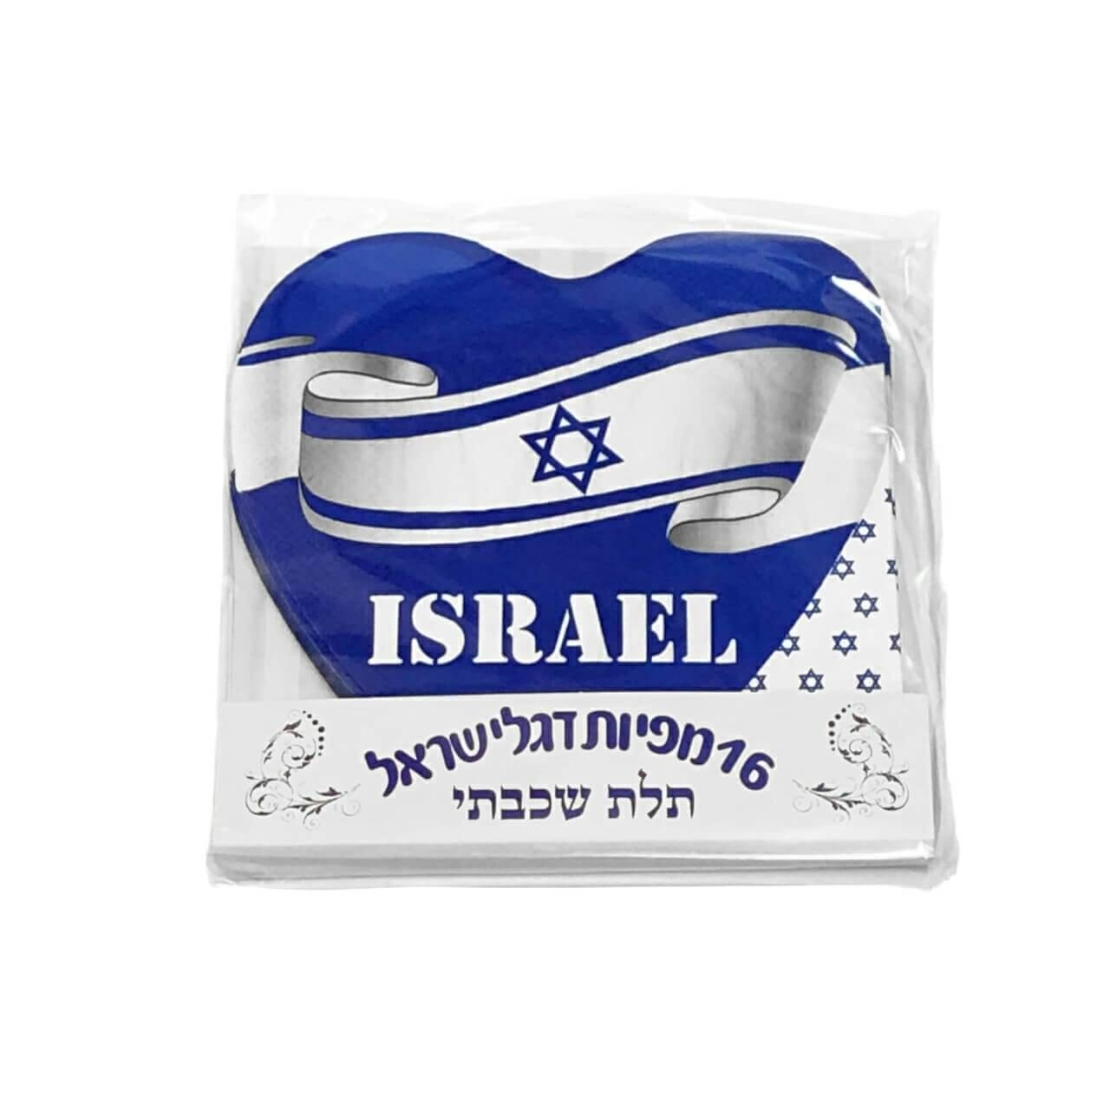 מפיות מעוצבות - דגל ישראל - דגם 1